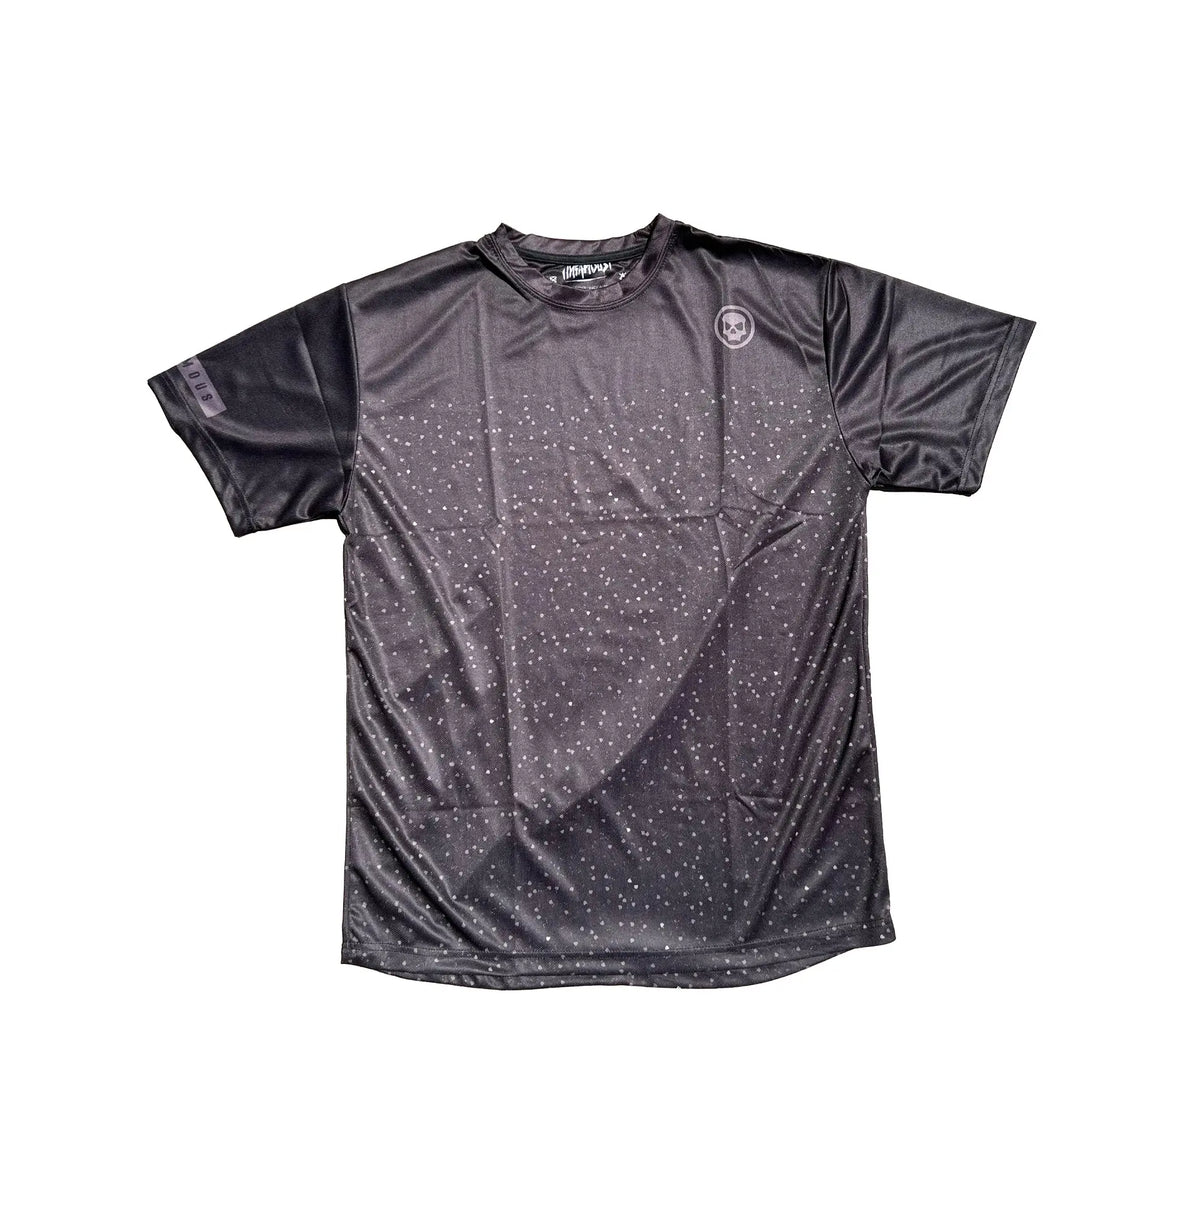 DryFit Tech T-Shirt - Spec Infamous Paintball